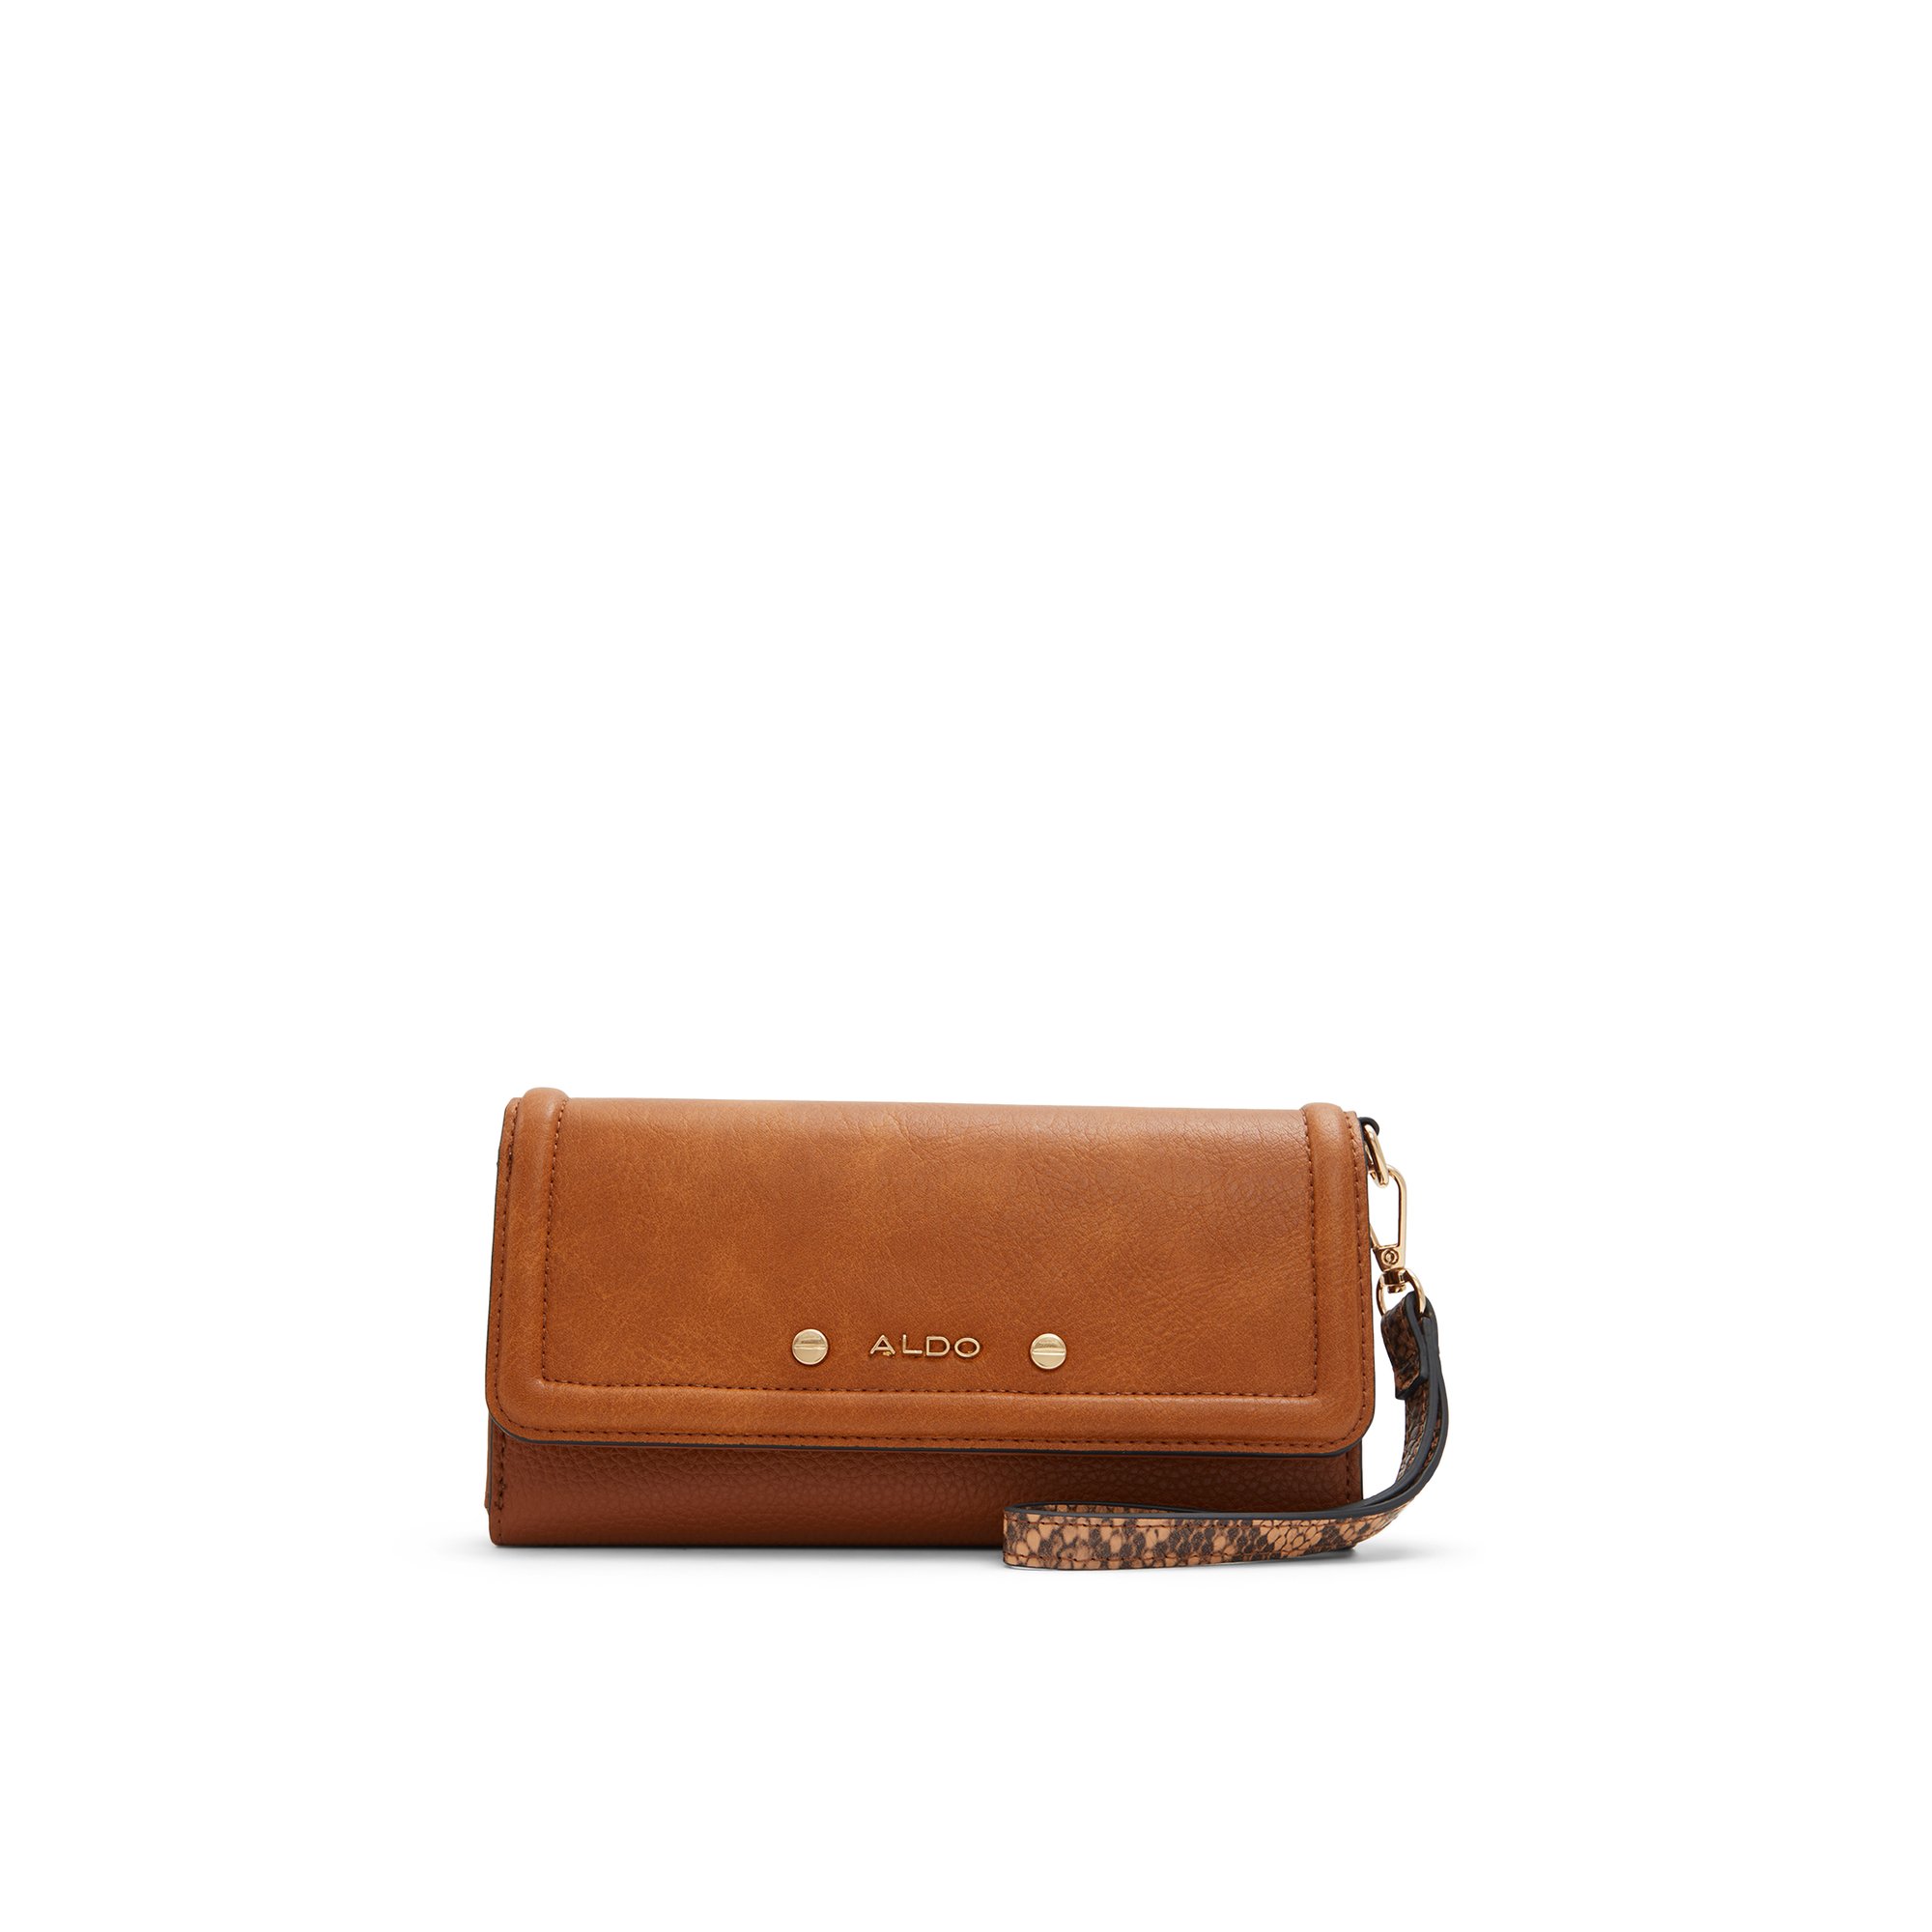 ALDO Elbobaldar - Women's Wallet Handbag - Brown